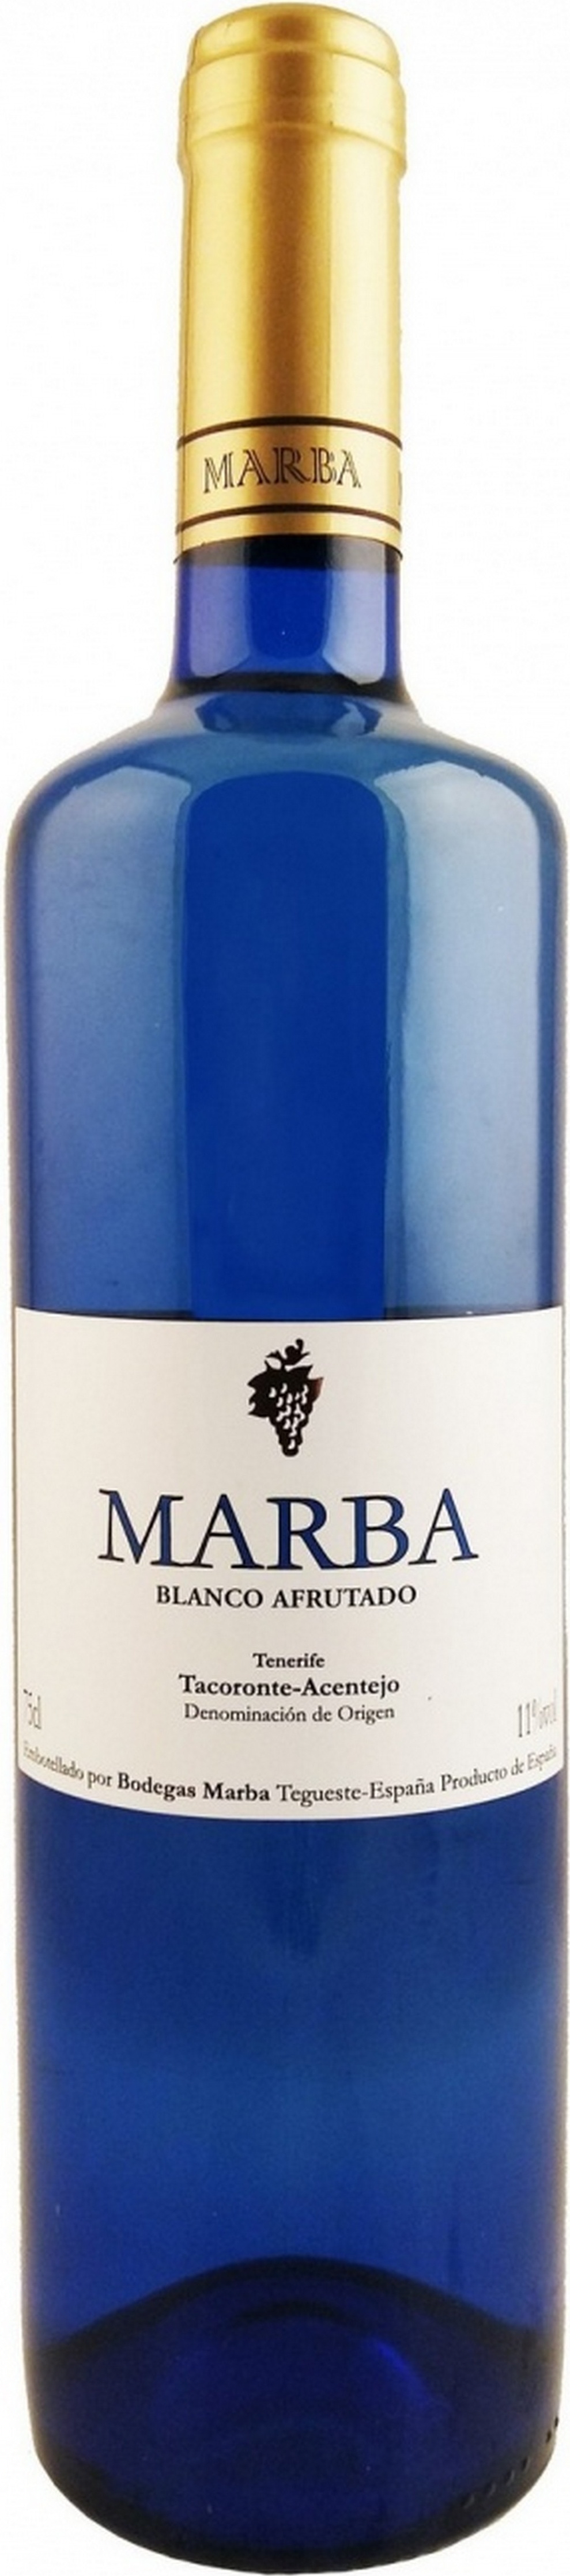 marba-blanco-afrutado-2018